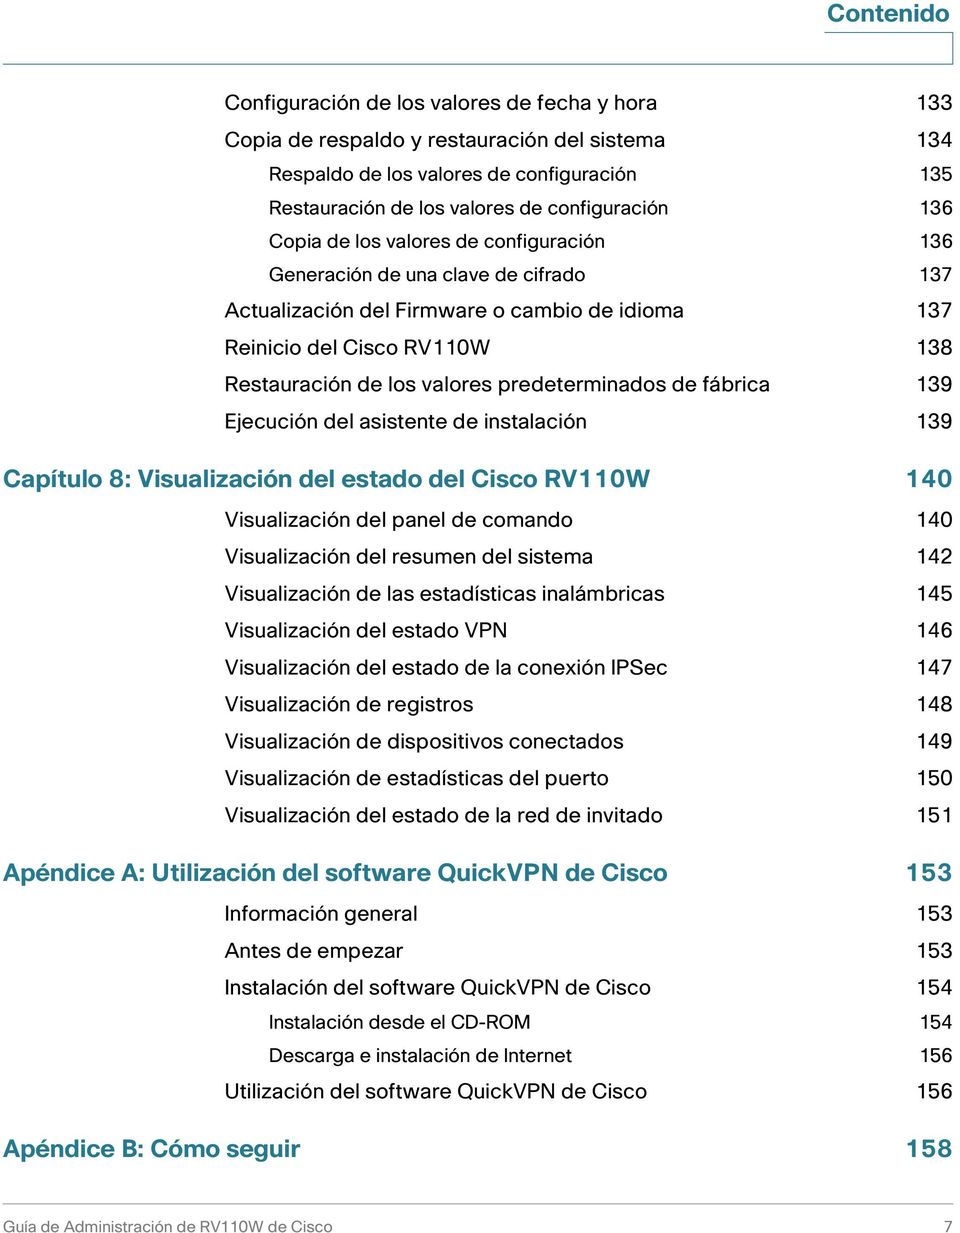 predeterminados de fábrica 139 Ejecución del asistente de instalación 139 Capítulo 8: Visualización del estado del Cisco RV110W 140 Visualización del panel de comando 140 Visualización del resumen